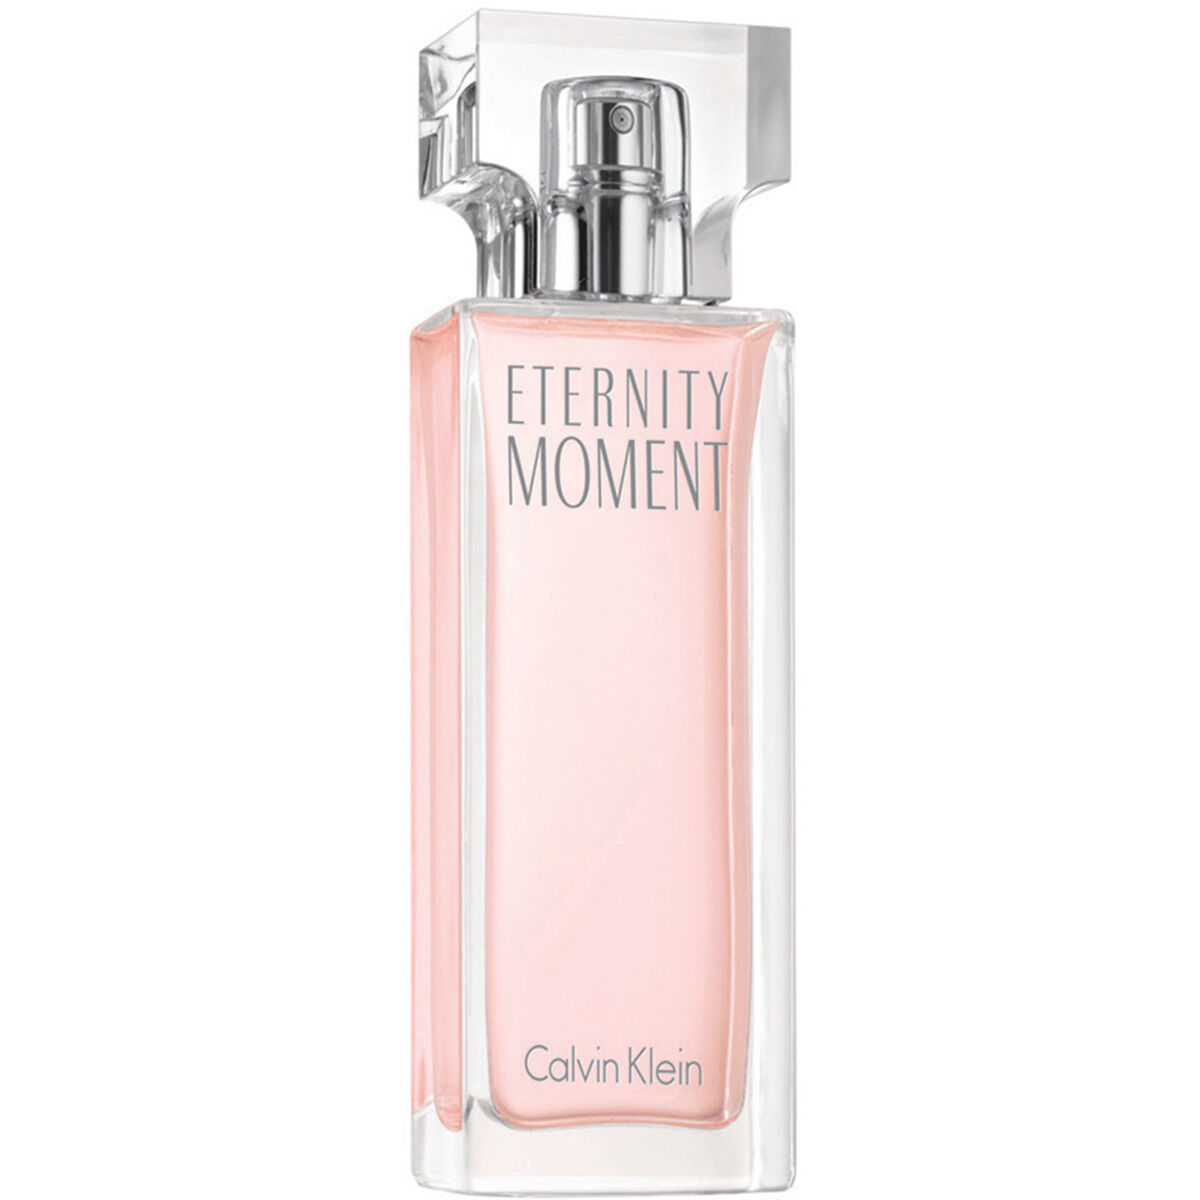 Calvin Klein Eternity Moment Eau de Parfum 30ml